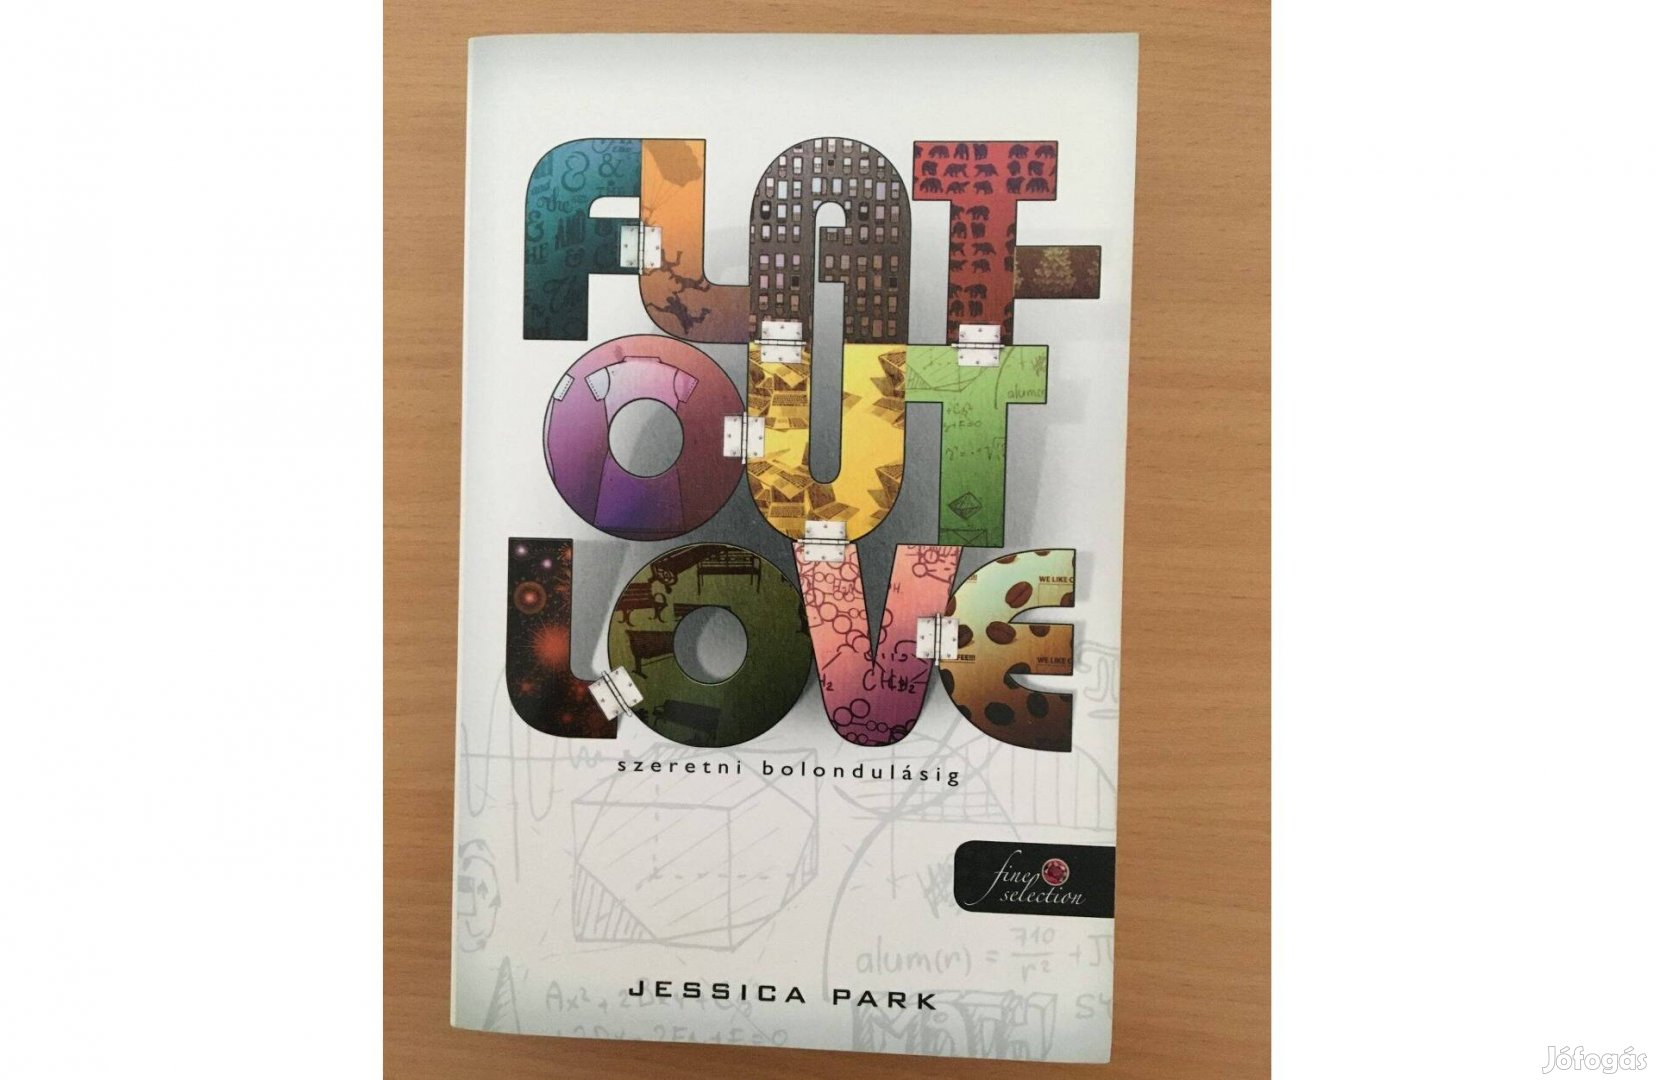 Jessica Park: Flat-Out-Love - Szeretni bolondulásig című könyv